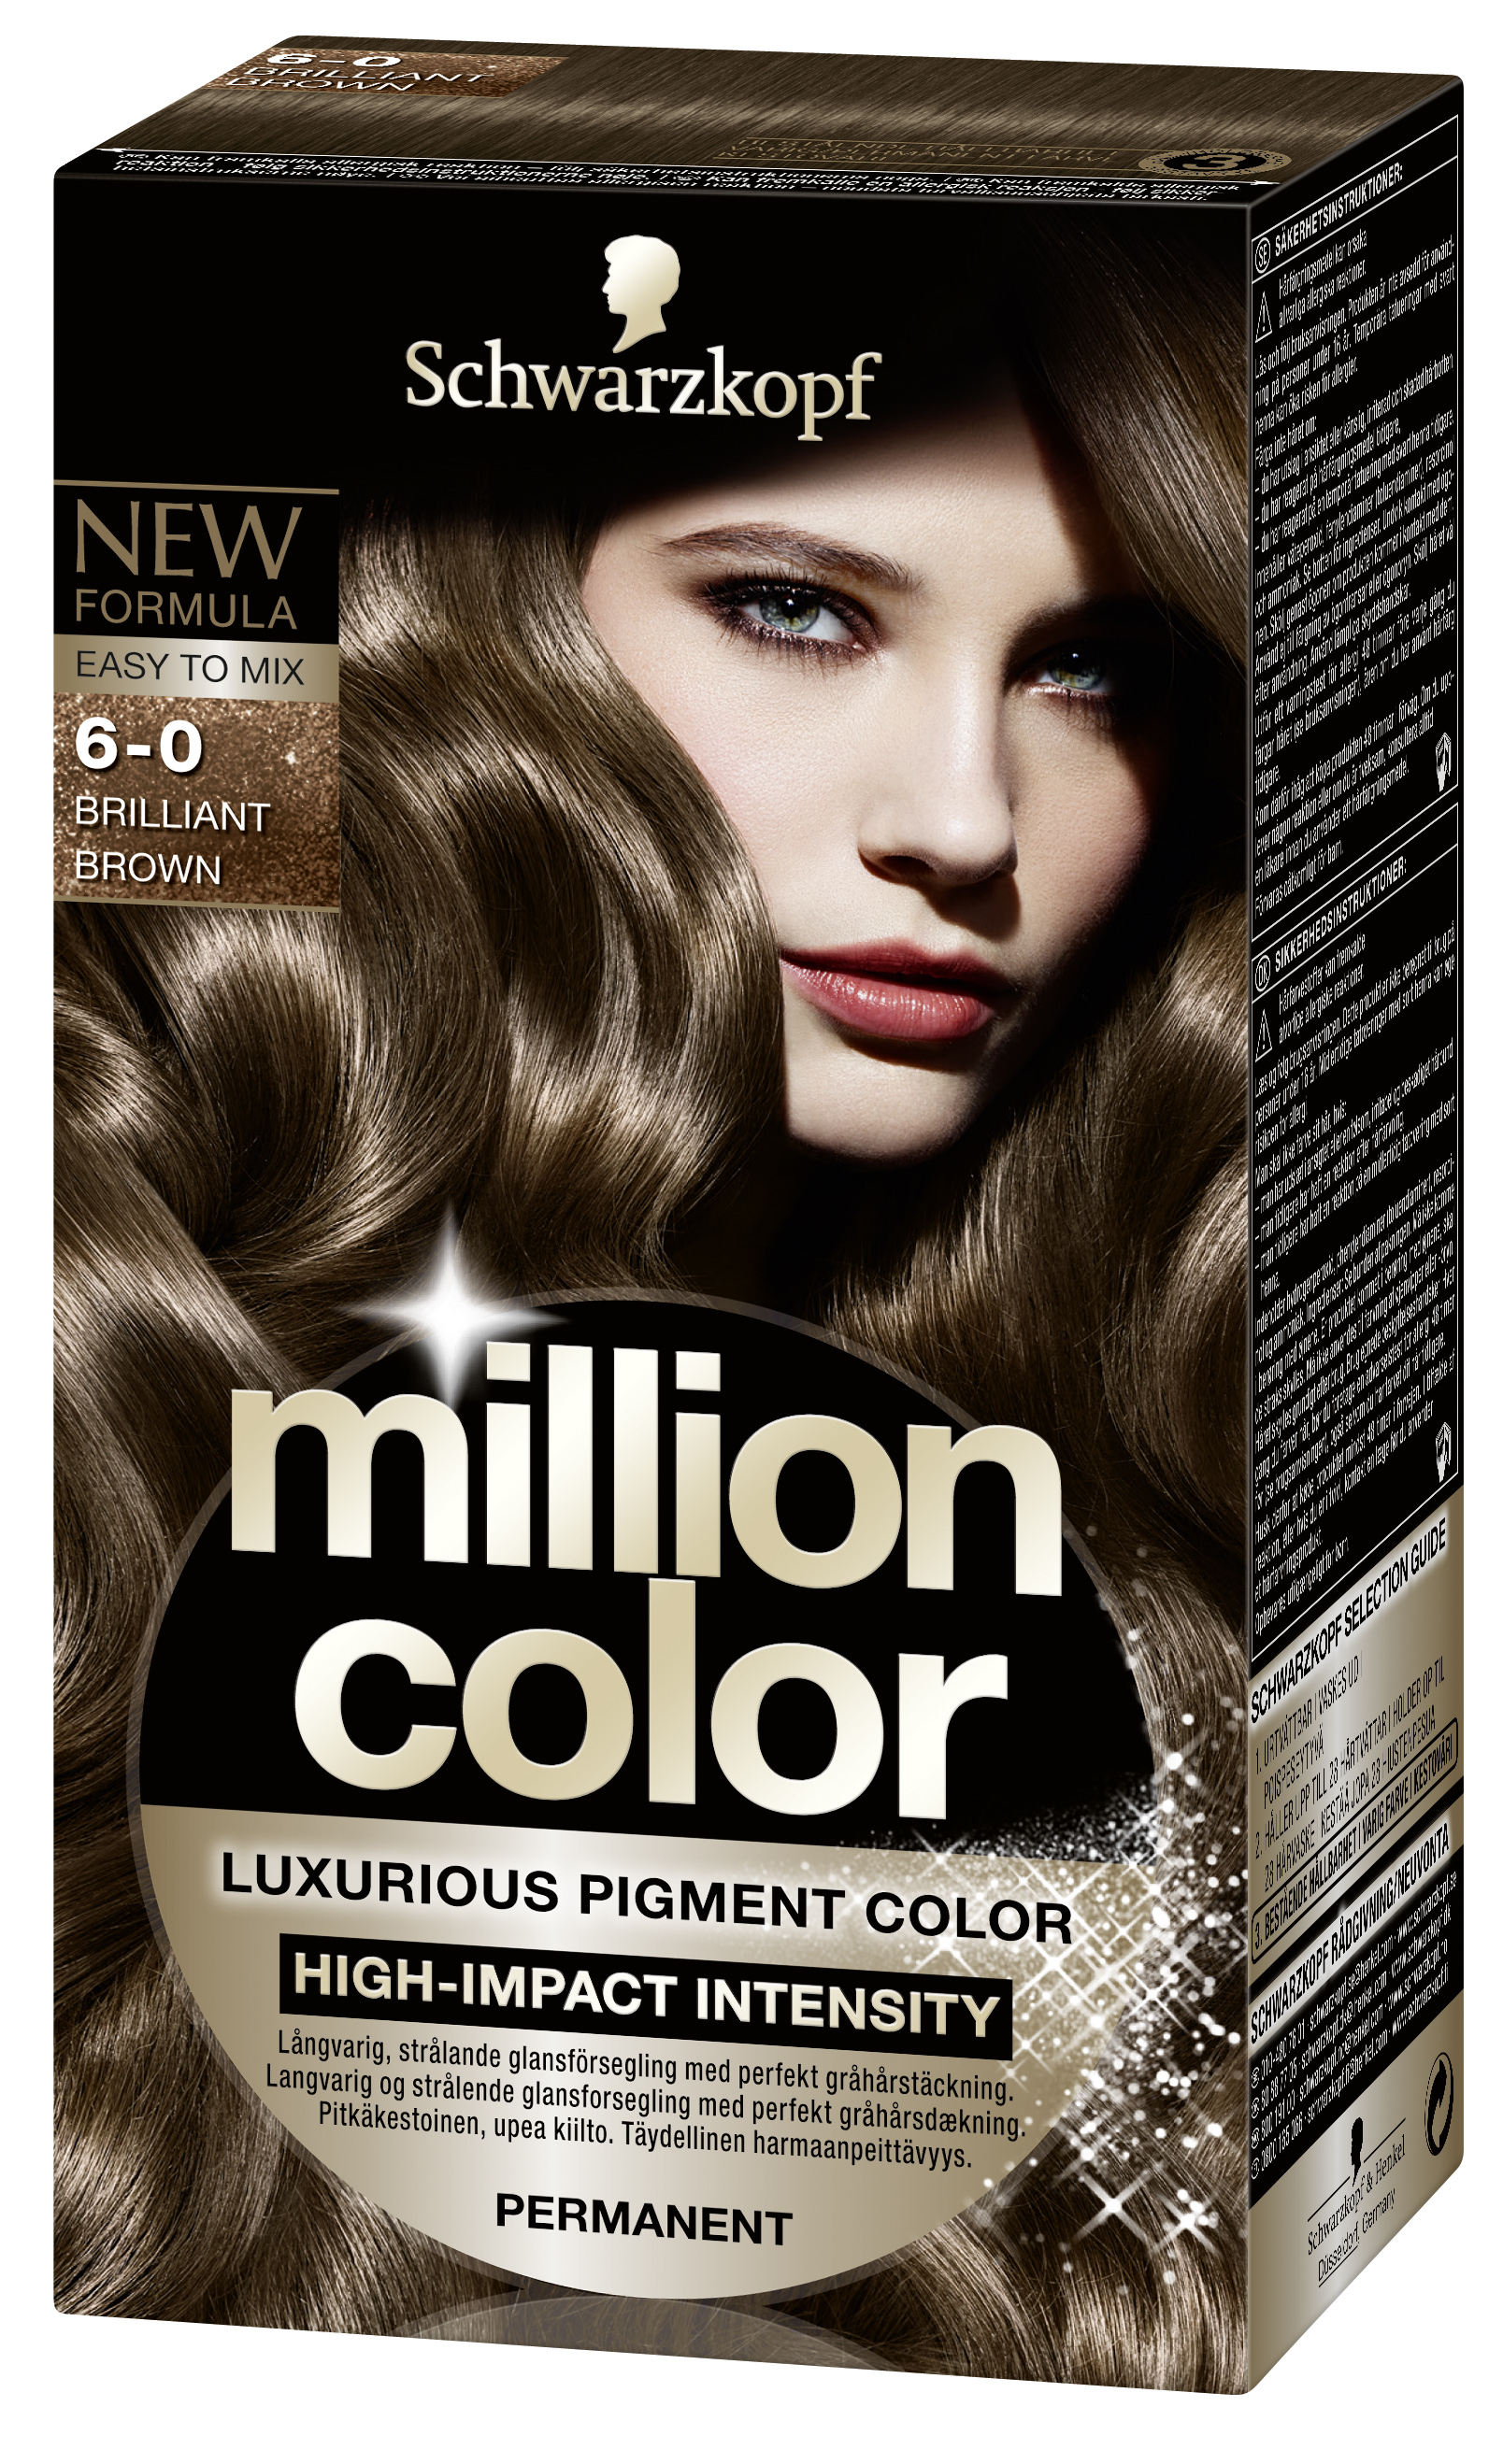 Хорошая темная краска для волос. Schwarzkopf million Color 6-0. Краска шварцкопф темный каштан. Краска для волос шварцкопф 6.0. Краска для волос шварцкопф холодный каштановый.